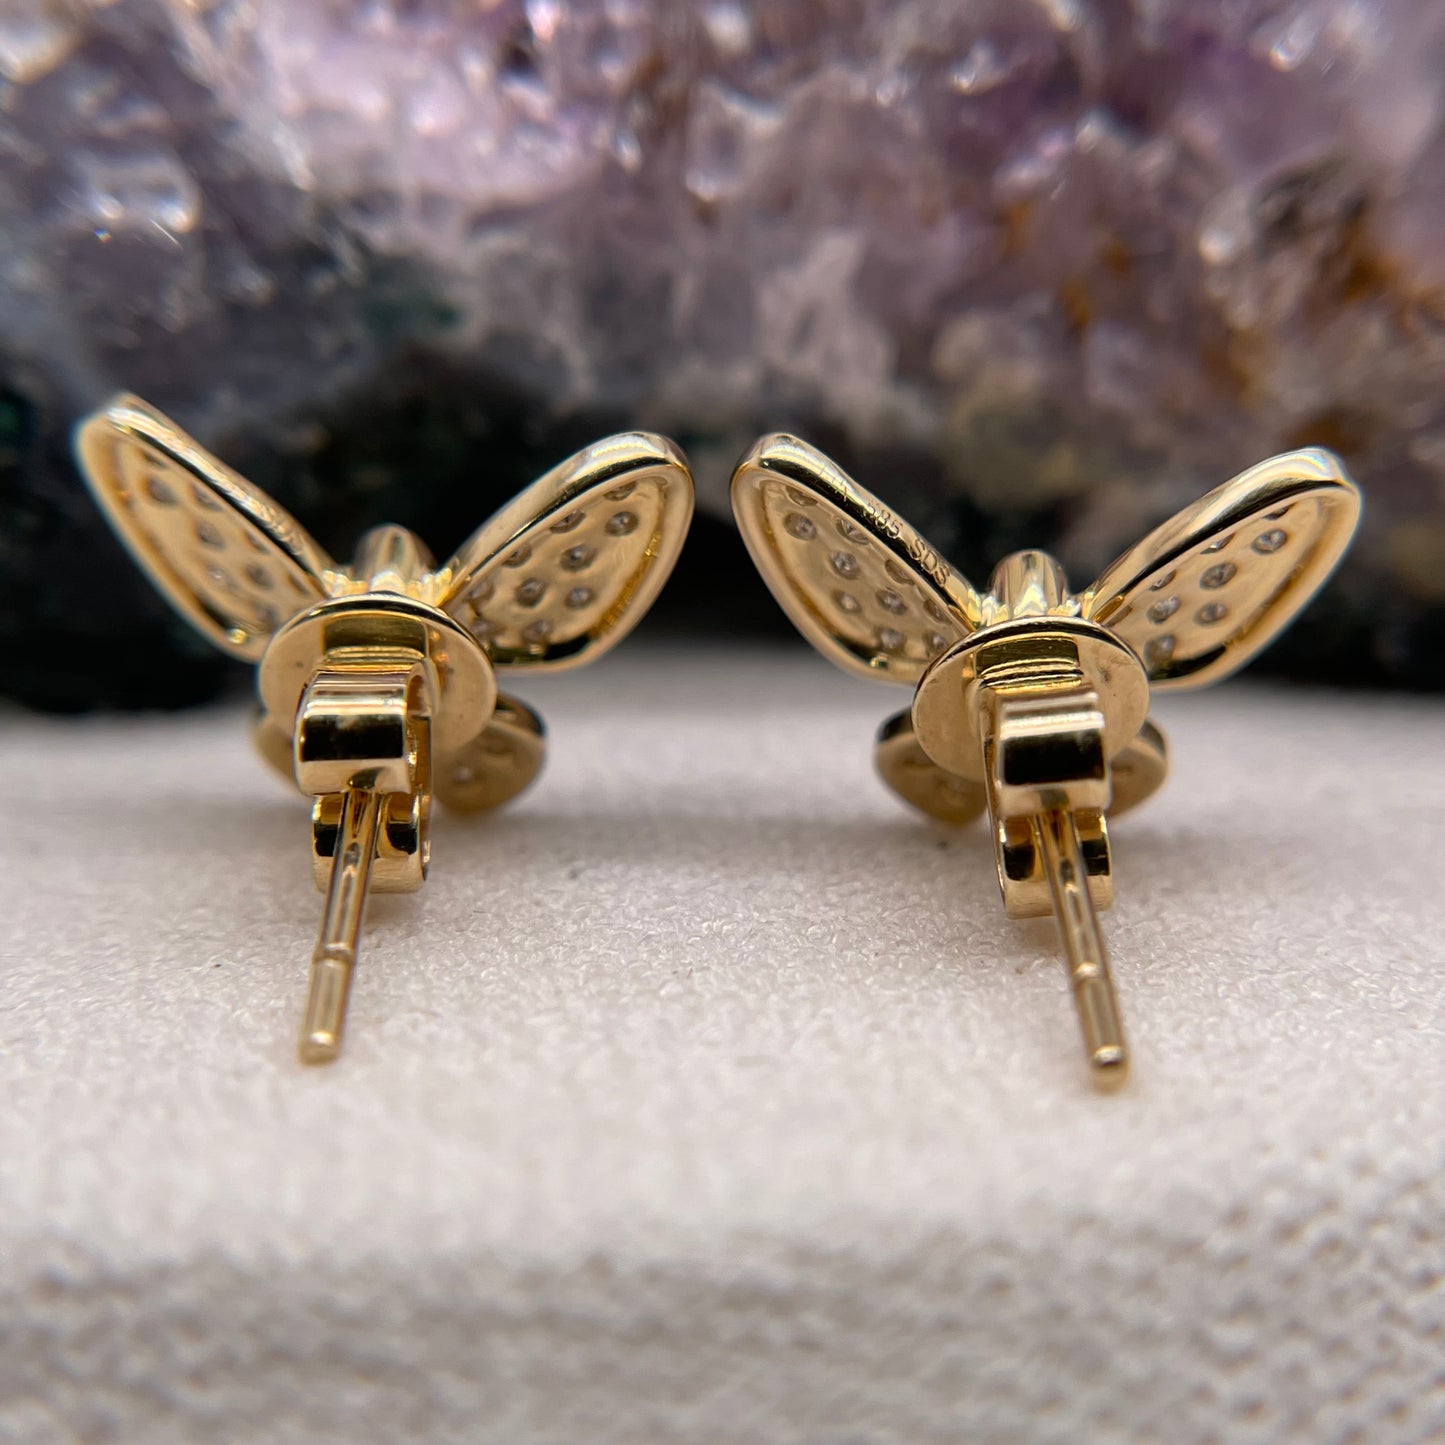 14K Gold Butterfly Earrings with Diamond